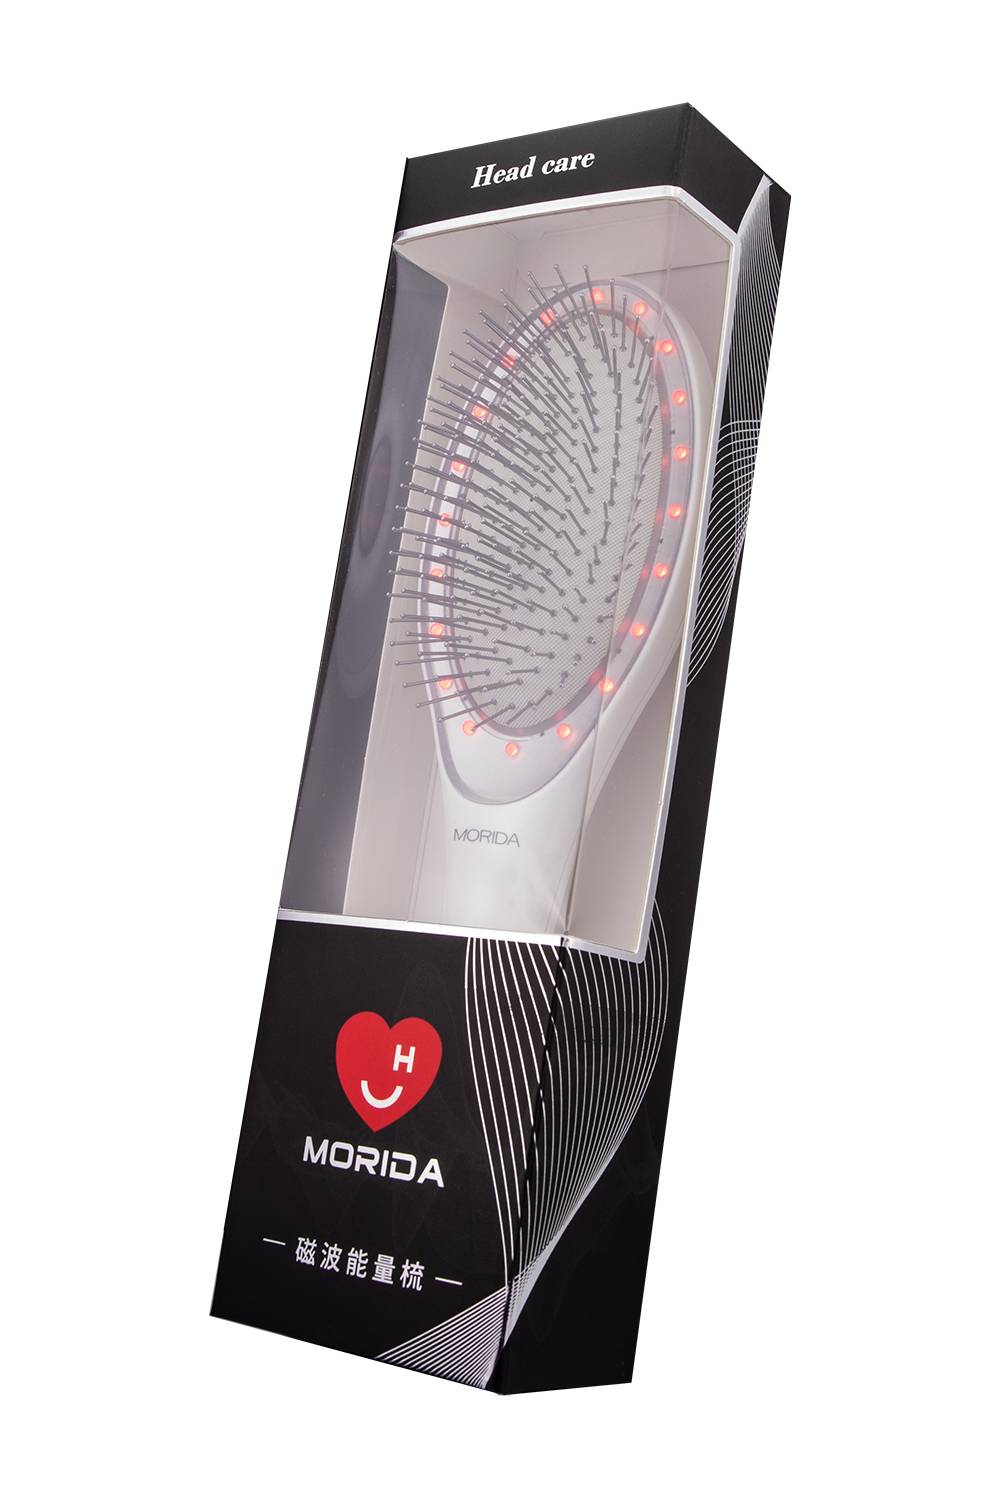 Morida磁波能量梳 - 遠紅外線磁療按摩